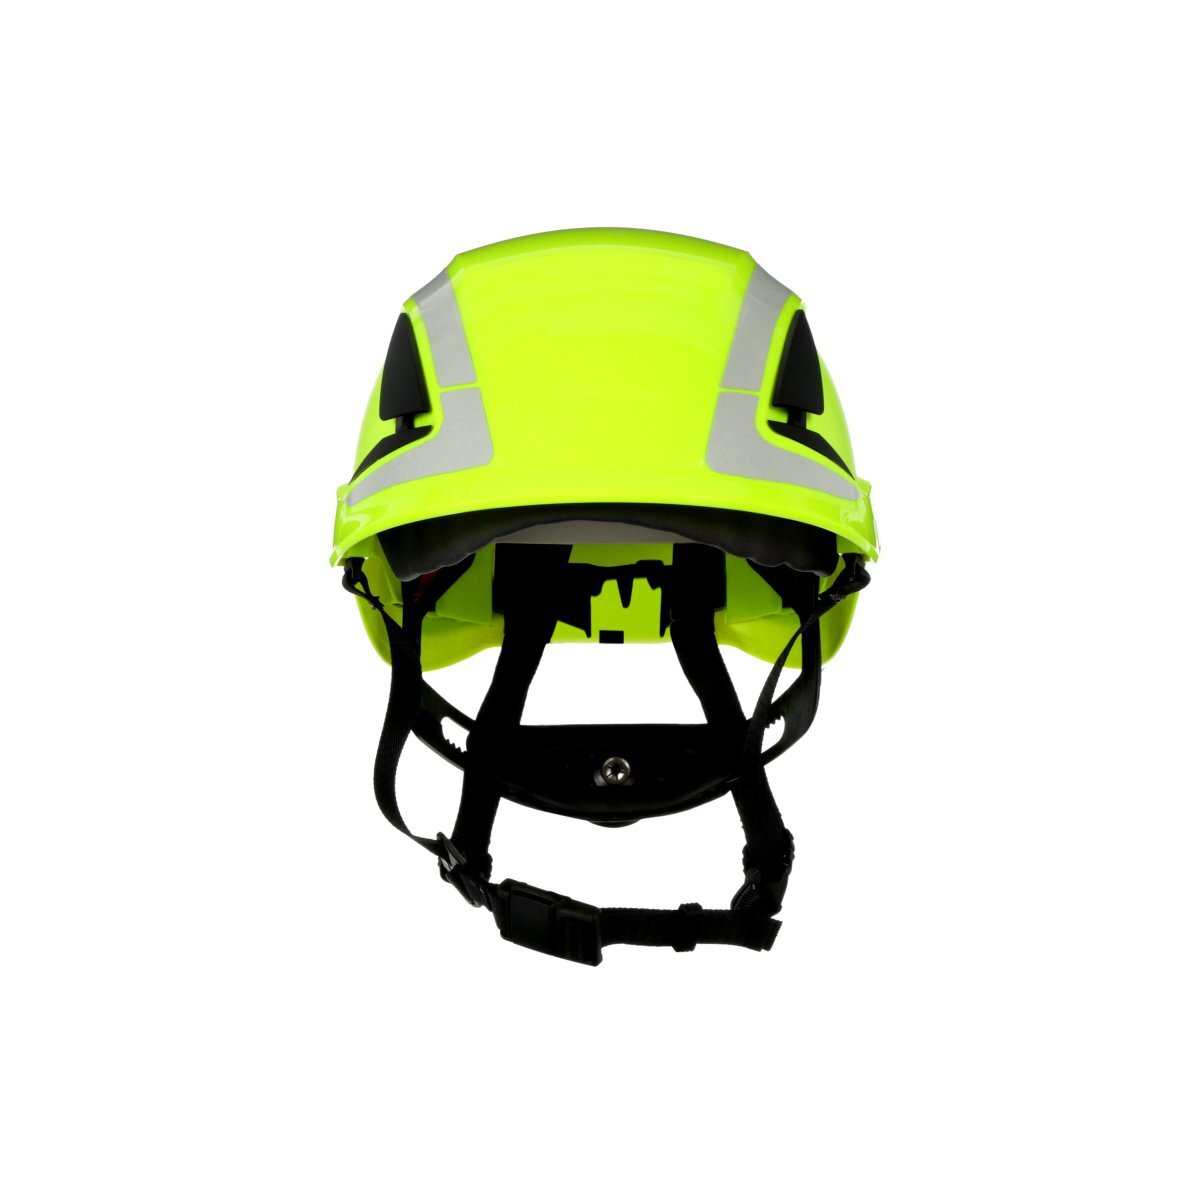 3M™ SecureFit™ Safety Helmet, X5014-ANSI, HV Green